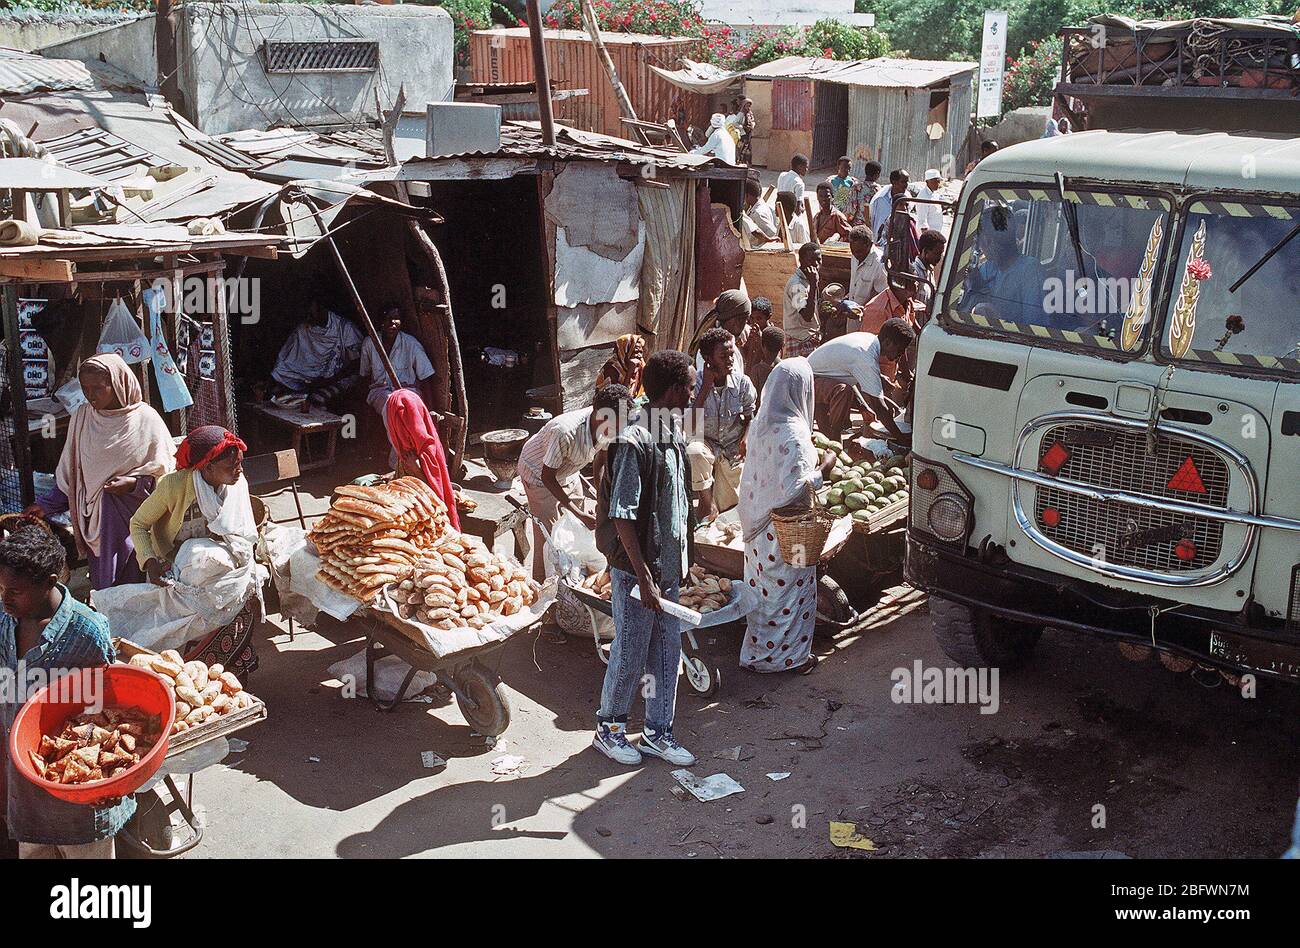 1992 - vendedores somalíes surcan sus mercancías en una concurrida calle de la ciudad durante el esfuerzo de socorro multinacional operación Restaurar la esperanza. Mogadiscio (Somalia) Foto de stock